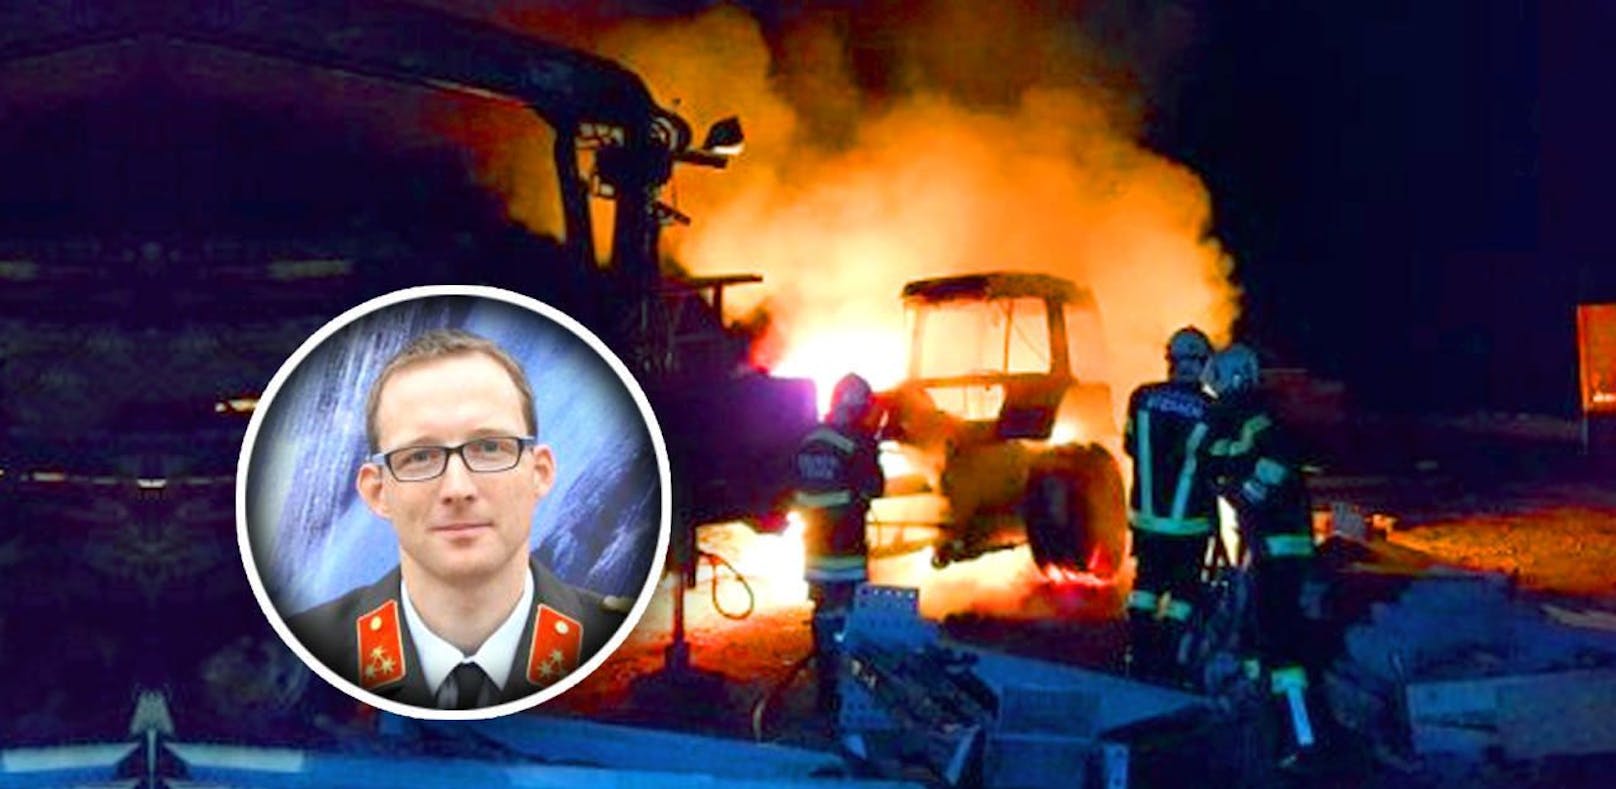 Feuerwehr-Kommandant: "Ich entdeckte den Brand"